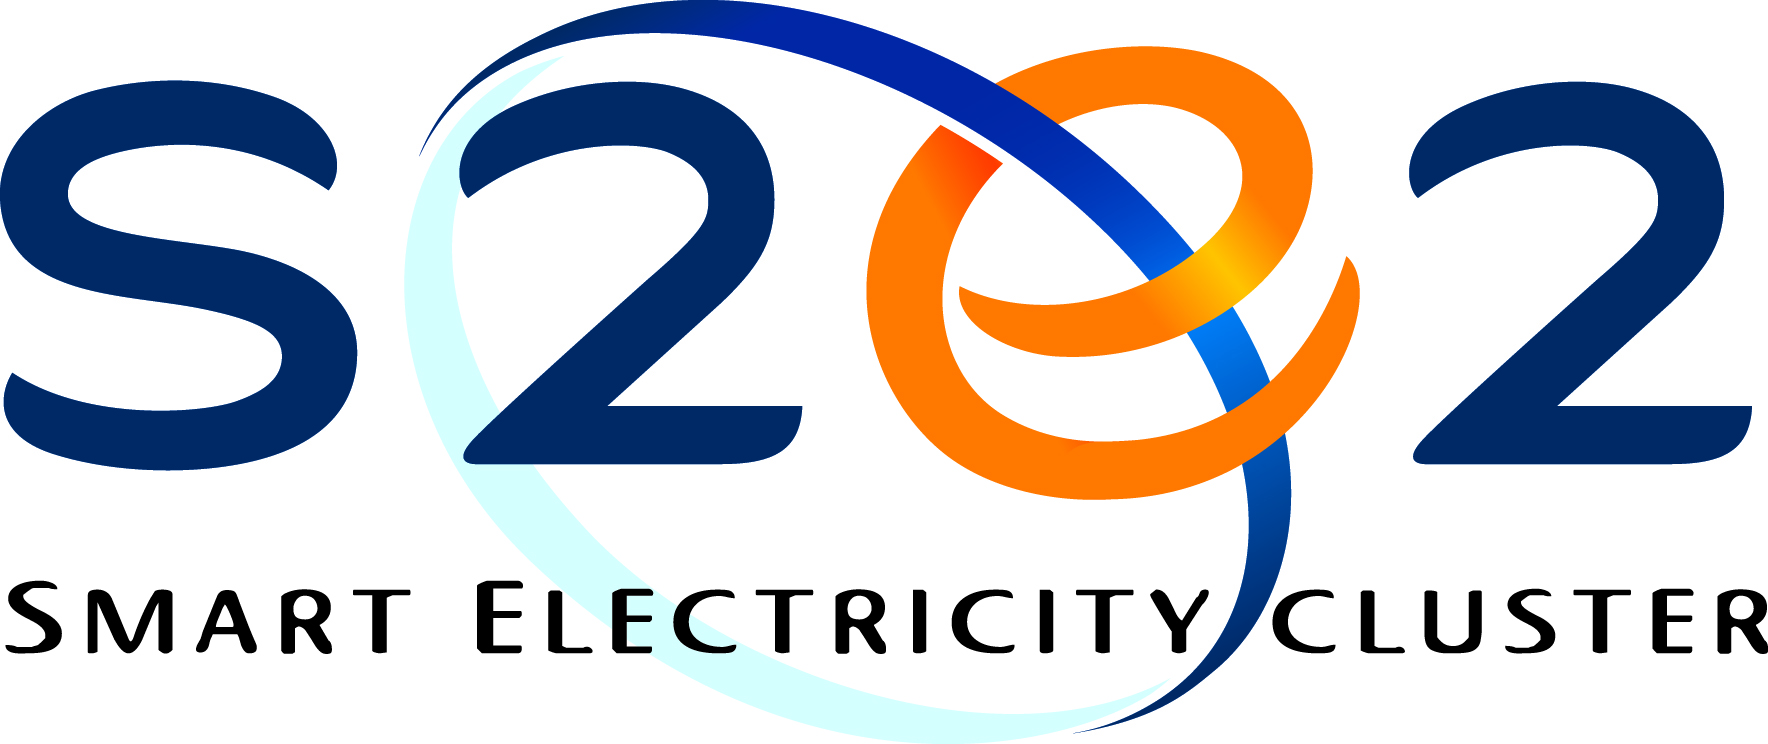 Logo de S2e2